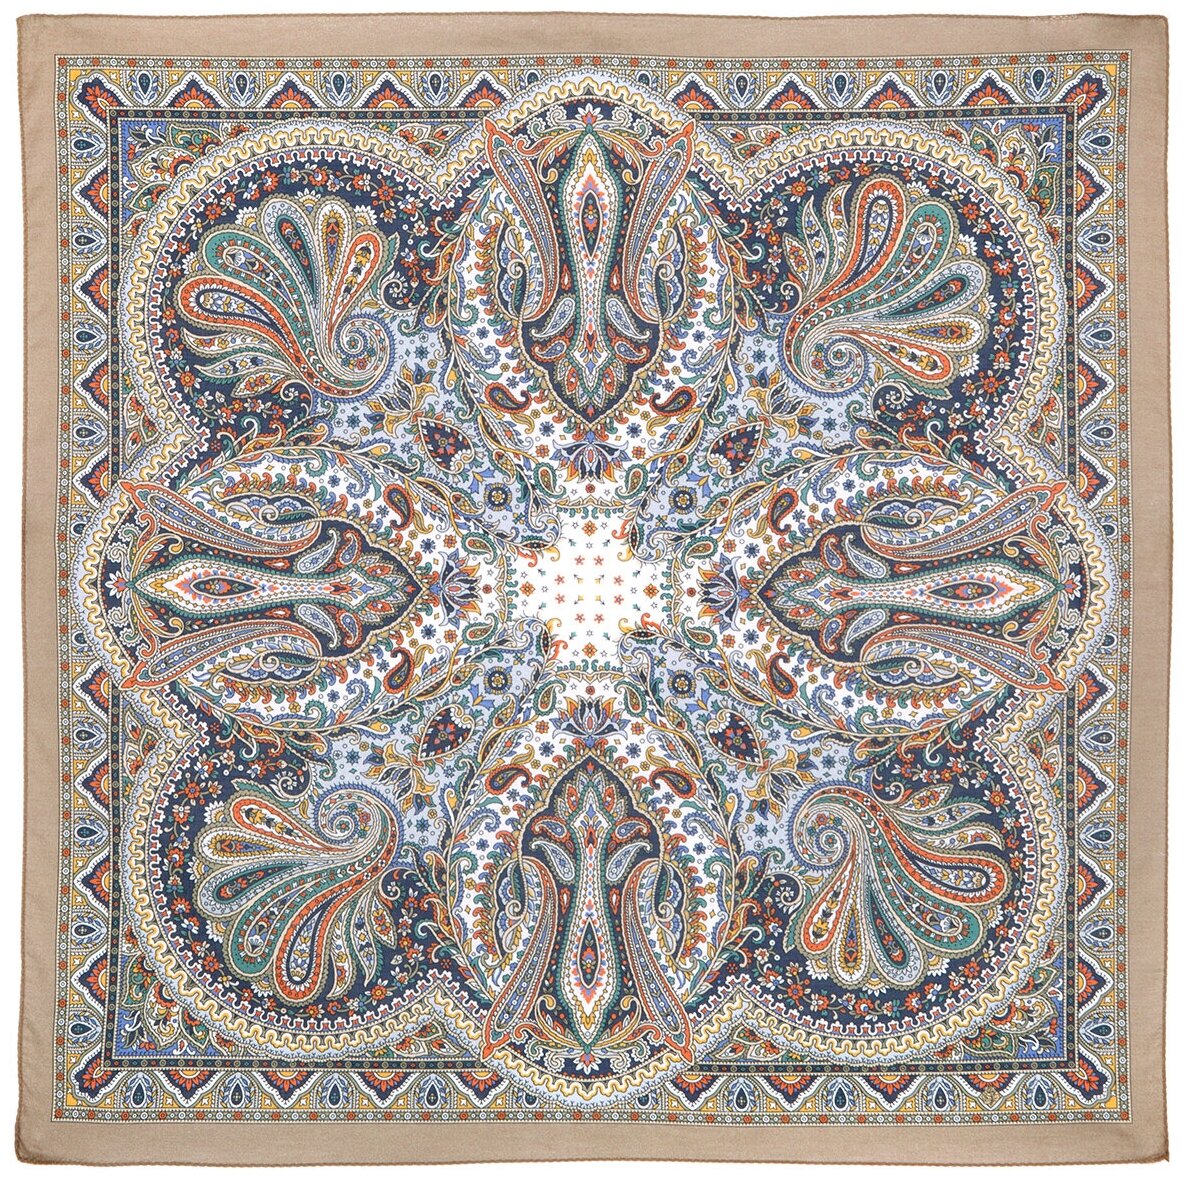 Павловопосадские платки/ платок из хлопка (батист), 1750 тальянка, вид 2, бежевый